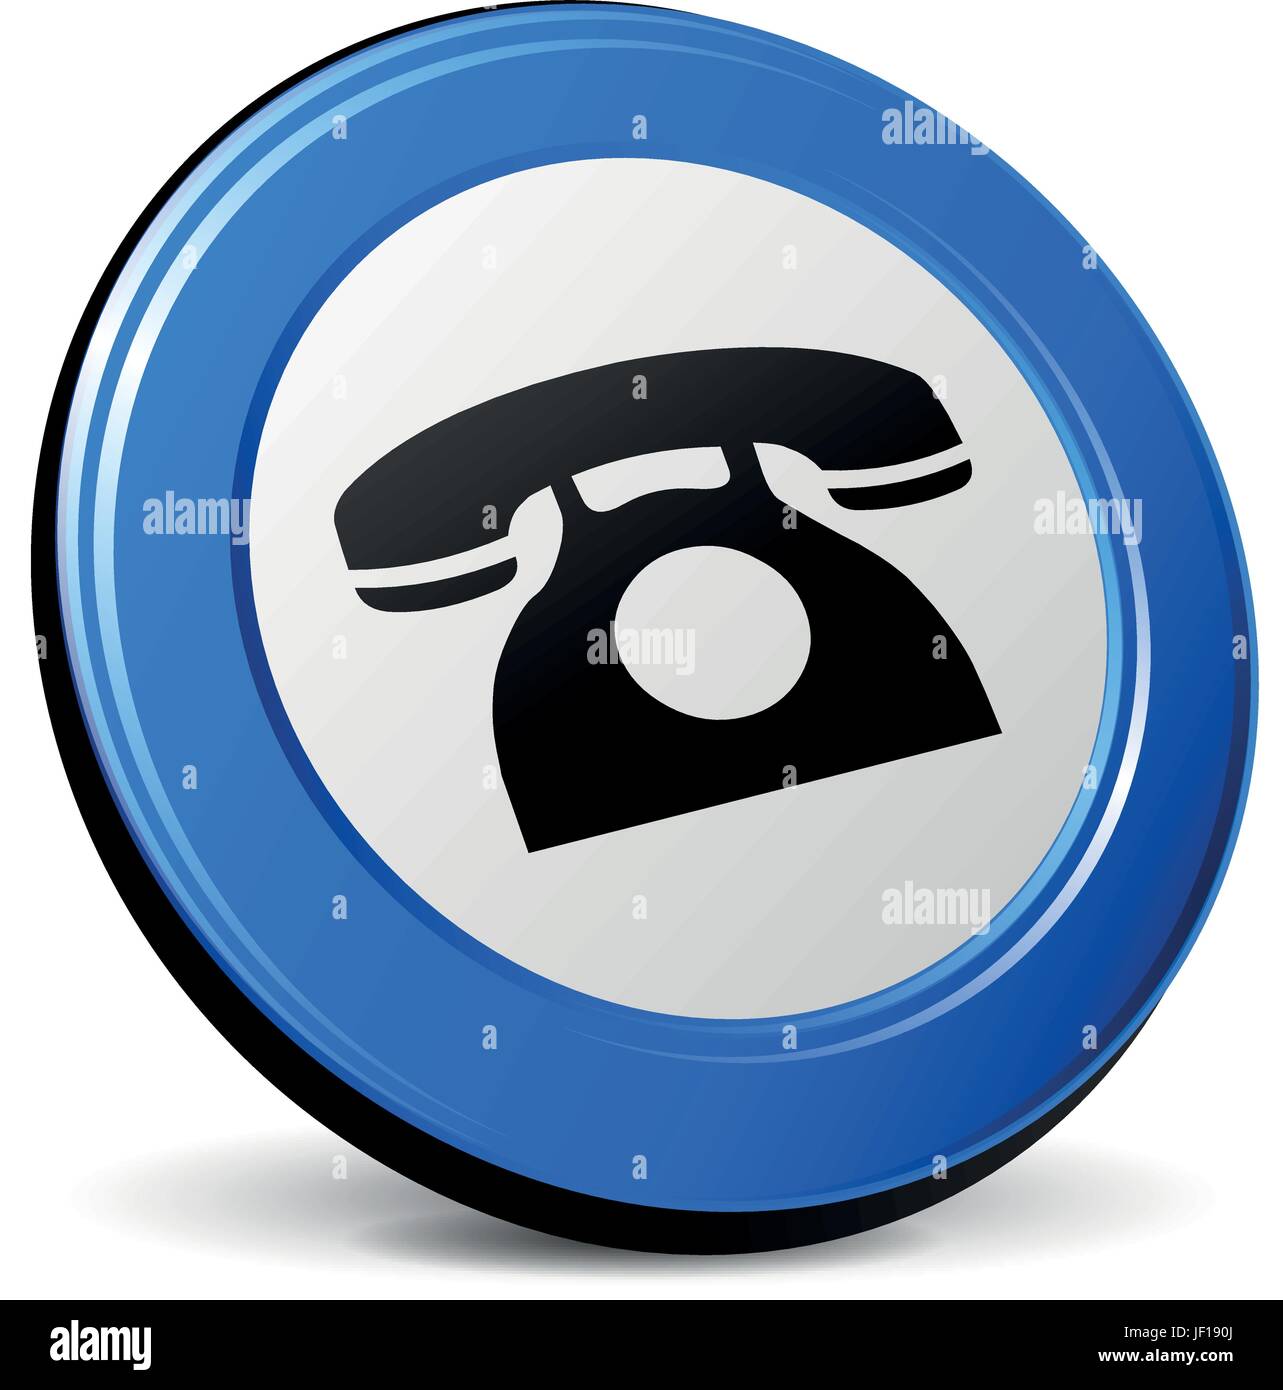 Téléphone, téléphone, appel, bleu, isolé, antique, noir, de teint basané, jetblack, profonde Illustration de Vecteur